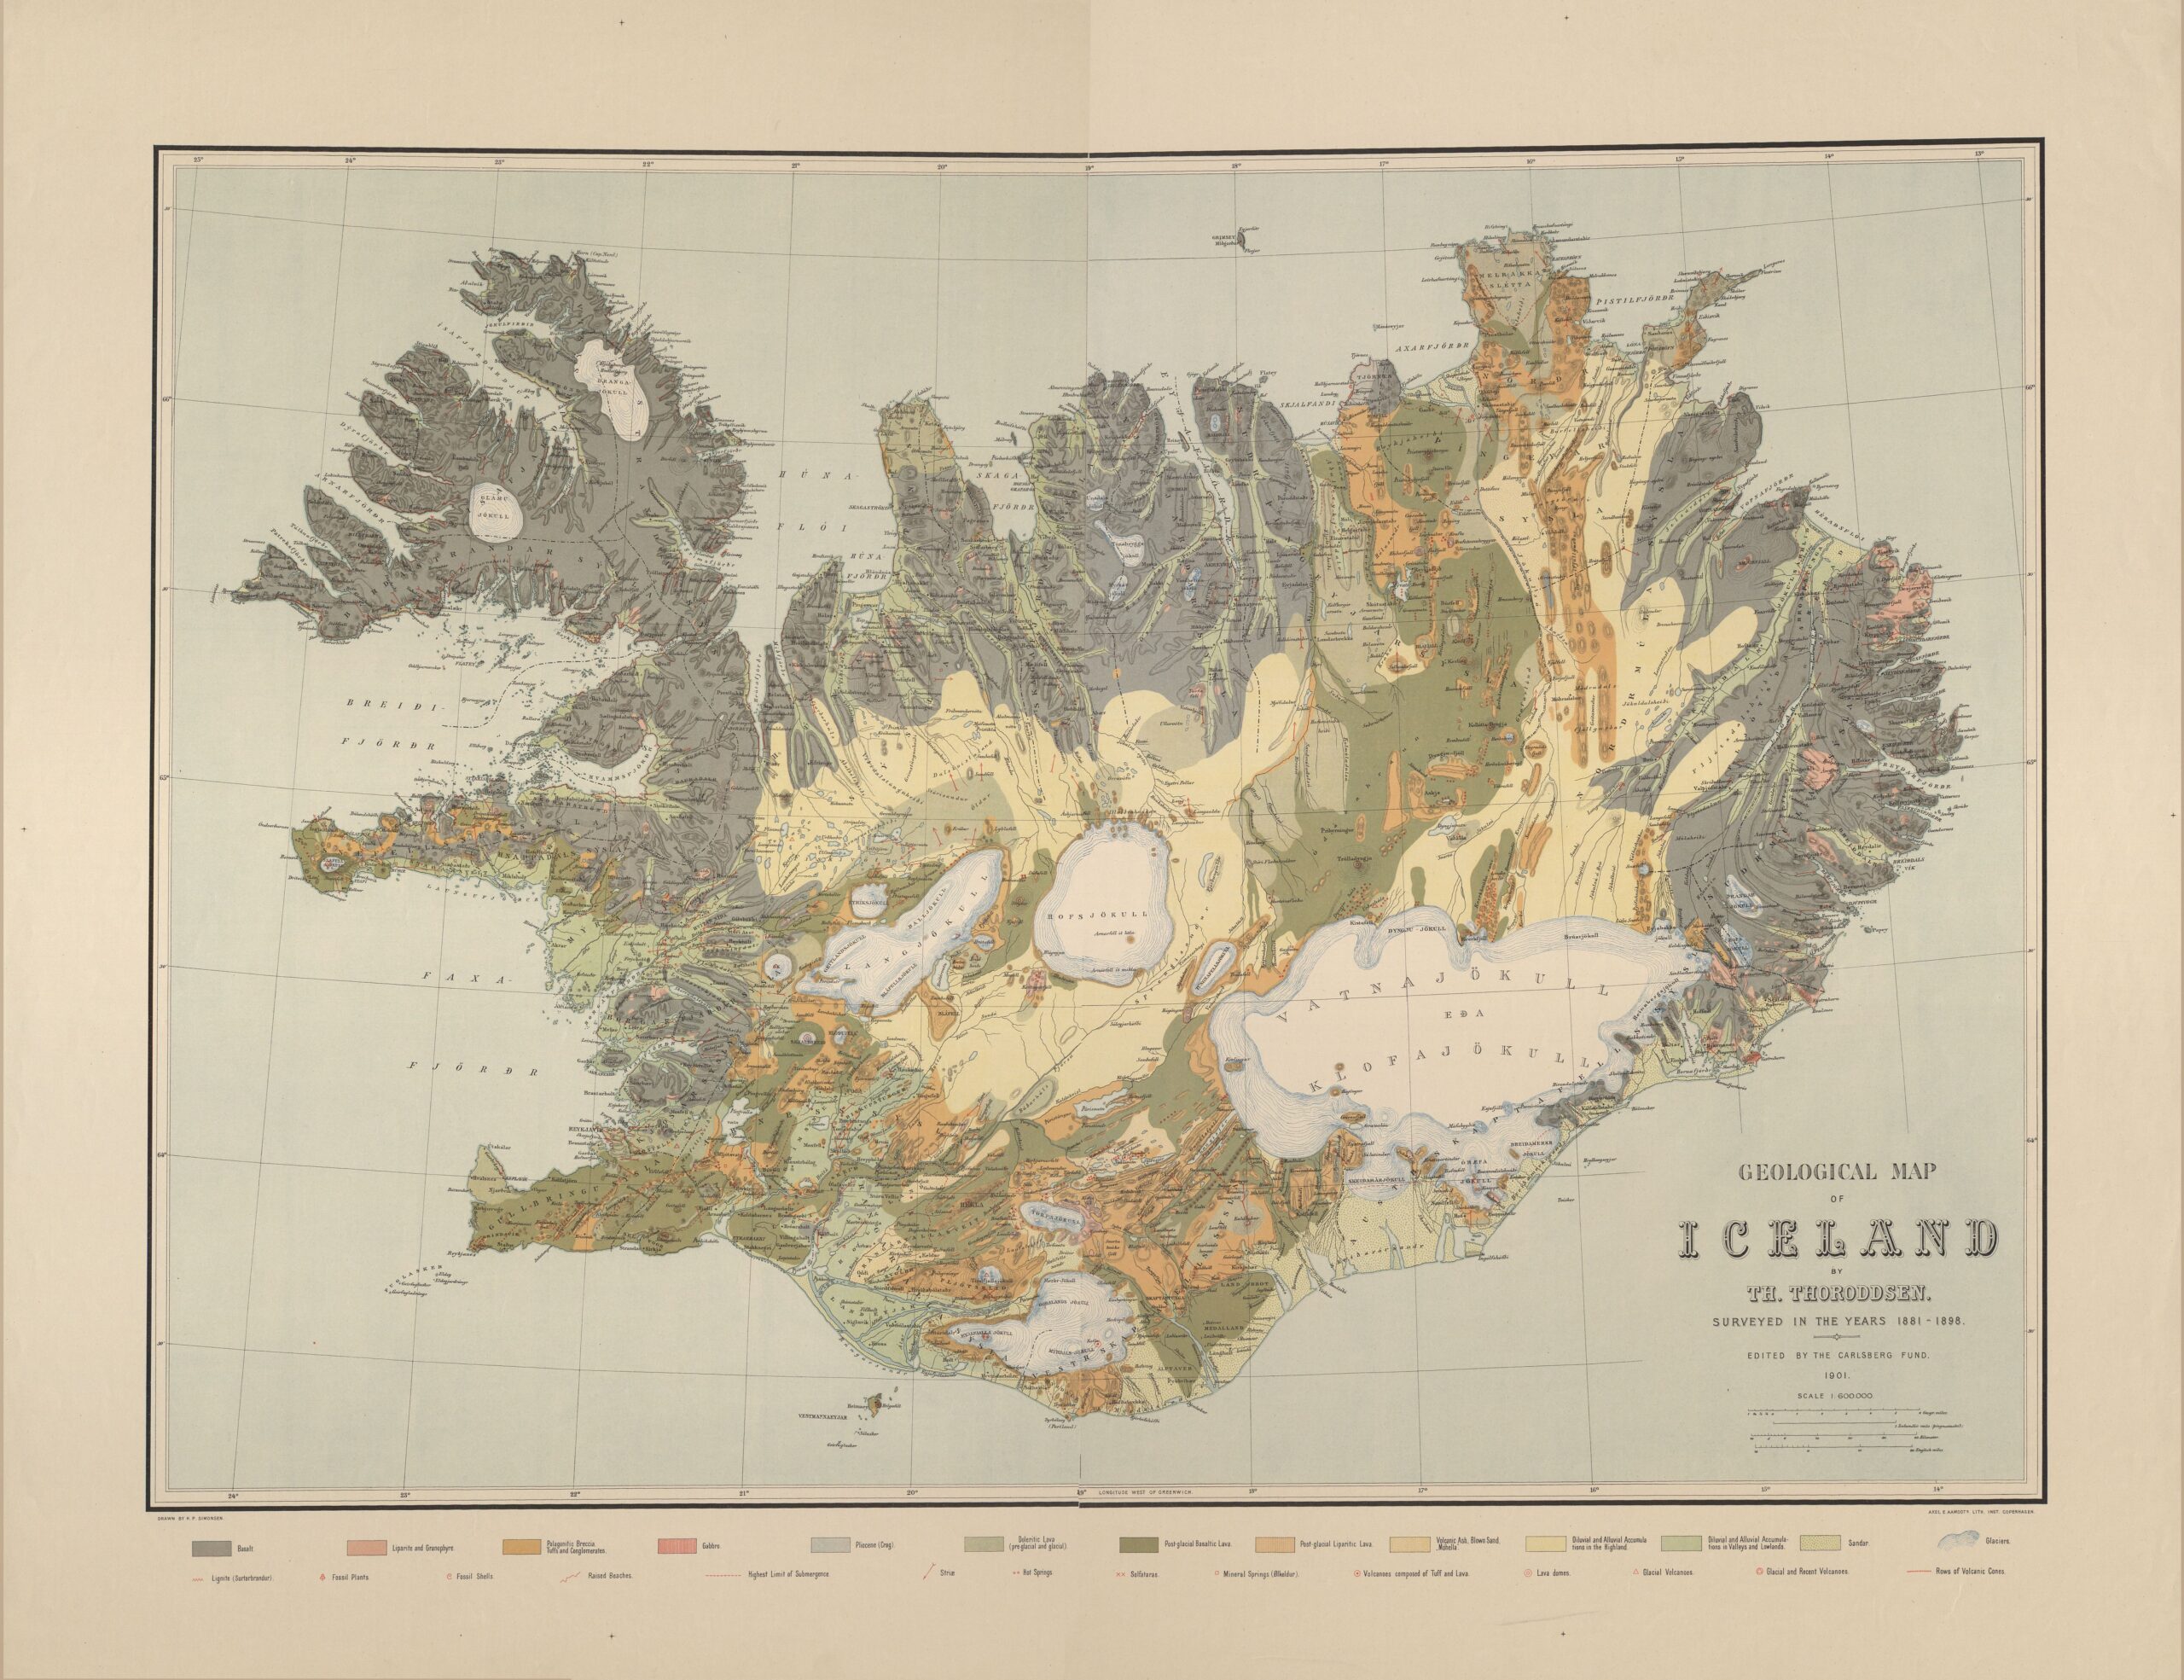 Mapa geológico de Islandia (1901)